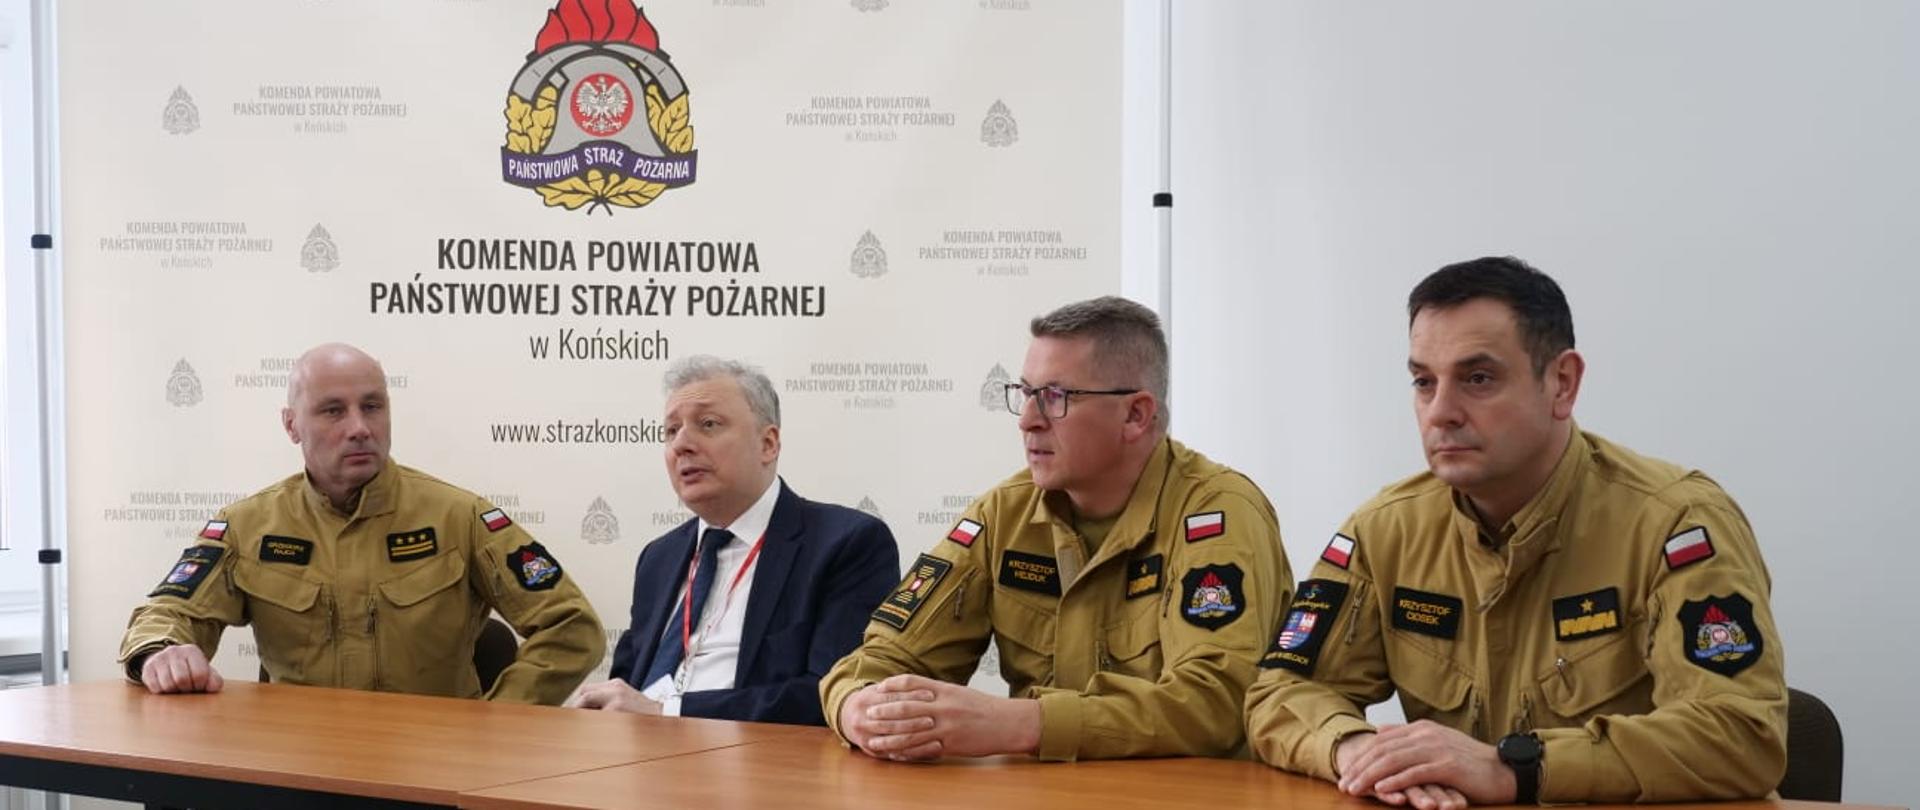 Na zdjęciu widzimy czterech mężczyzn siedzących za stołem prezydialnym w budynku. Za ich plecami ścianka z napisem KP PSP Końskie i logo PSP. Drugi od prawej jest w garniturze pozostali w mundurach piaskowych strażackich.